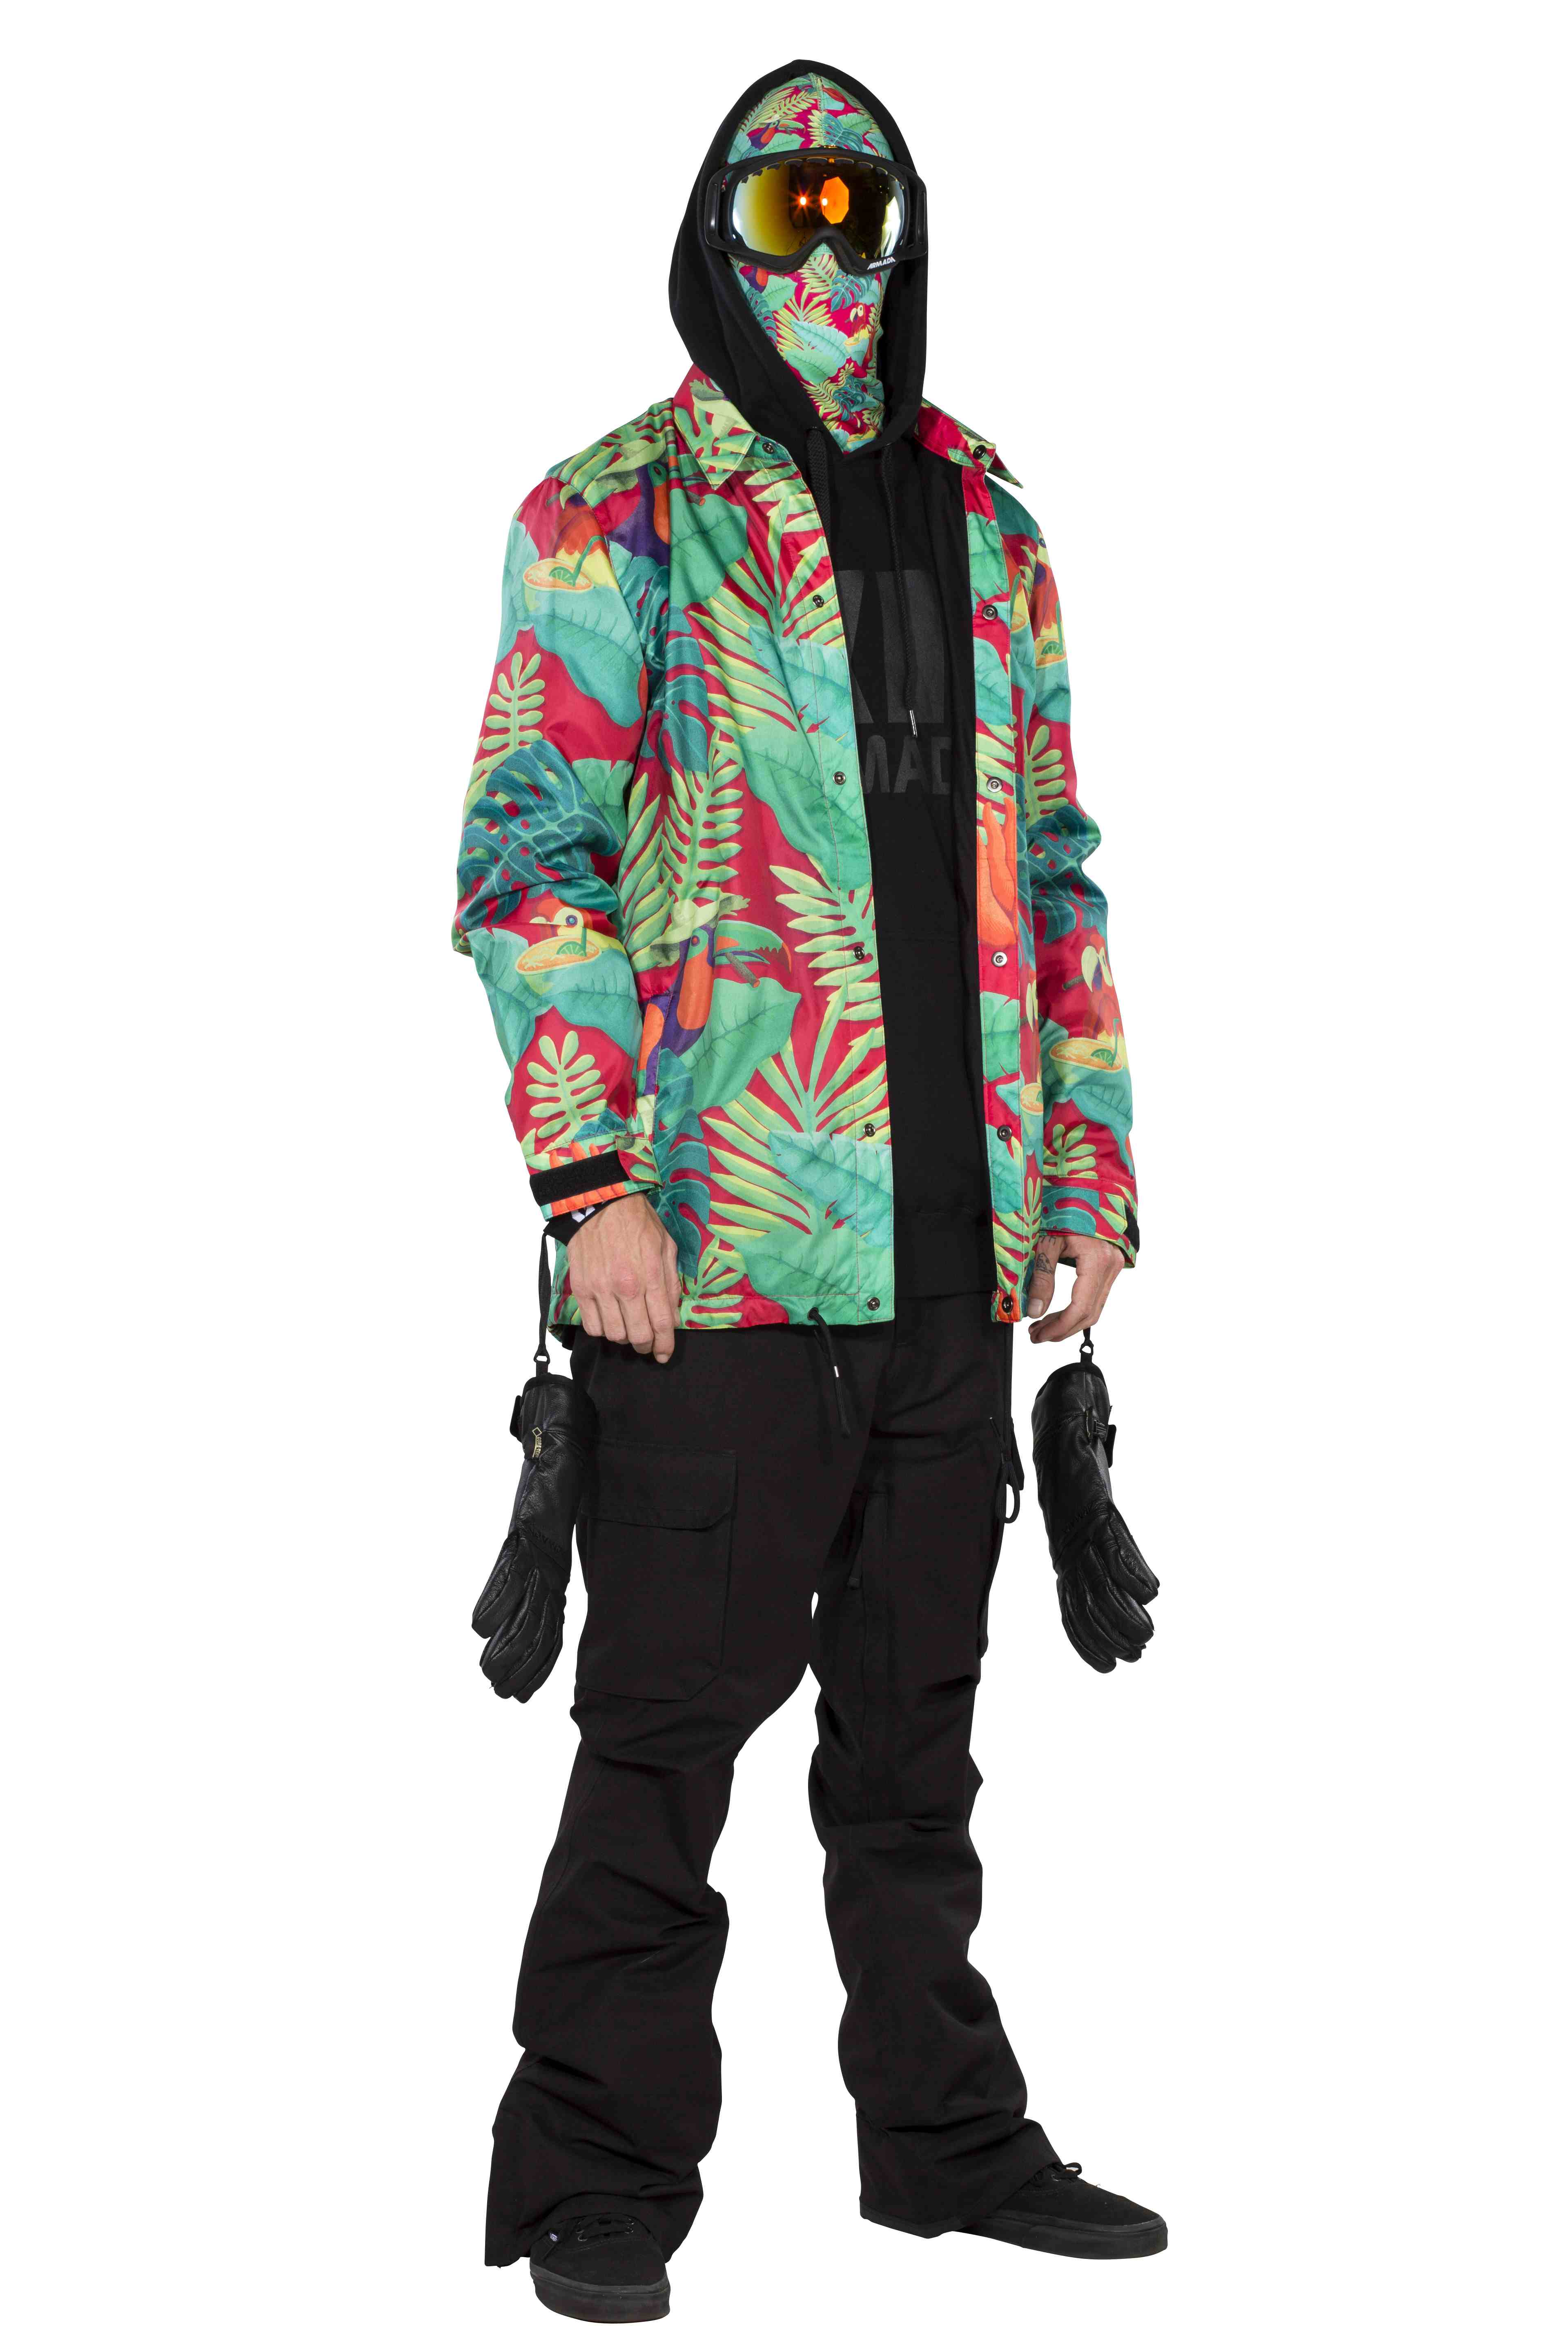 Mode homme sur les pistes de ski : imprimés, kaki et couleurs contrastées